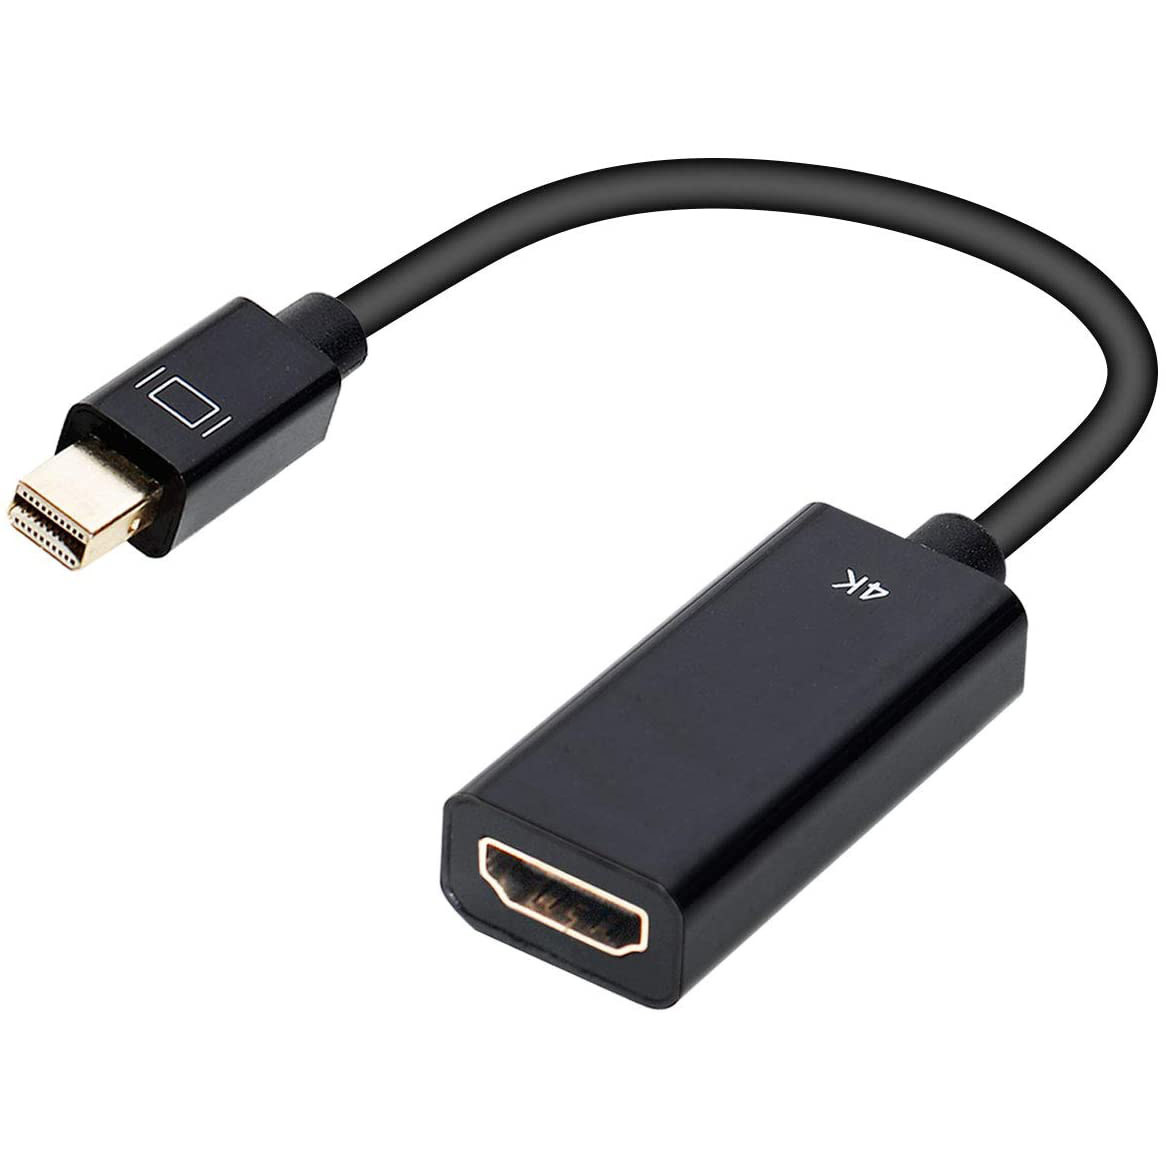 6 inch Mini Display Port Male to HDMI Female Adapter, Black - NWCA Inc.